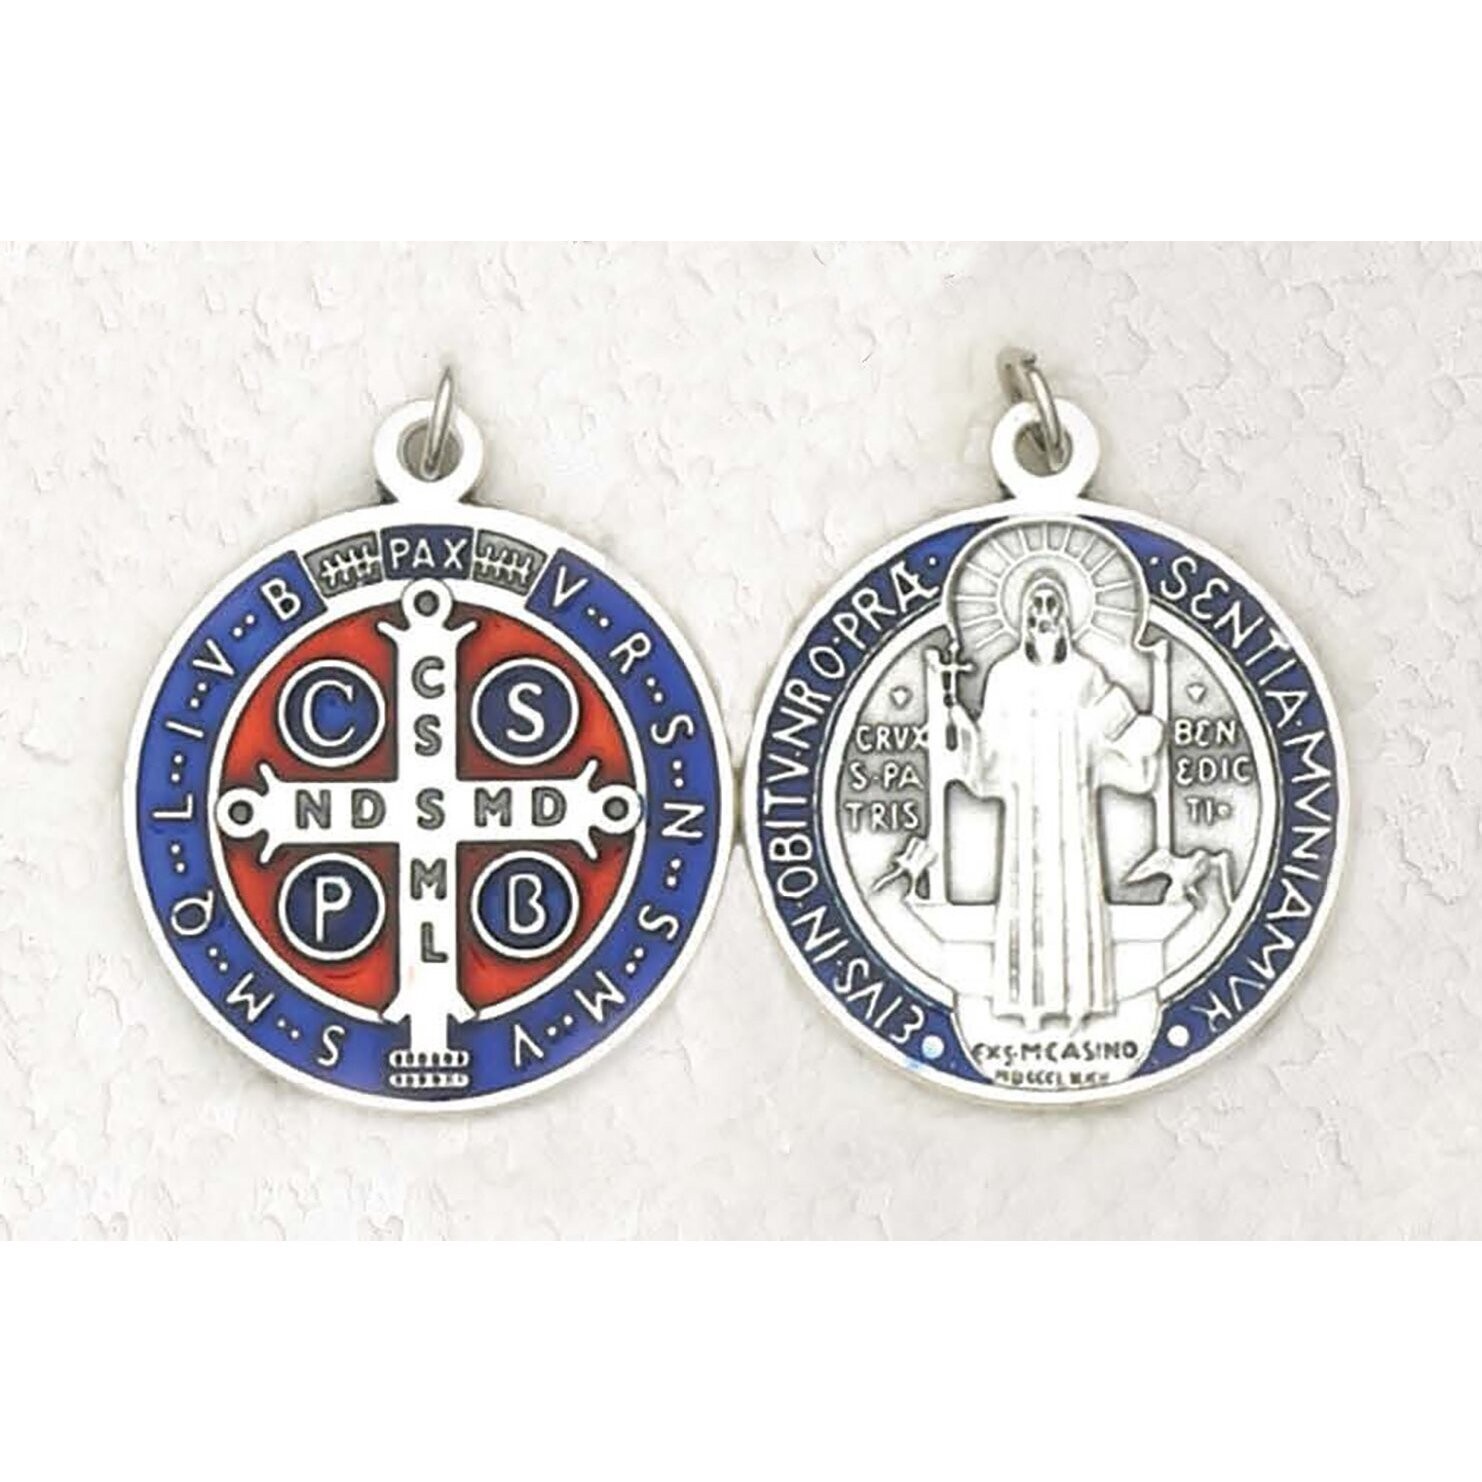 Scan St Benedict .75"BluEnaSilve Medal